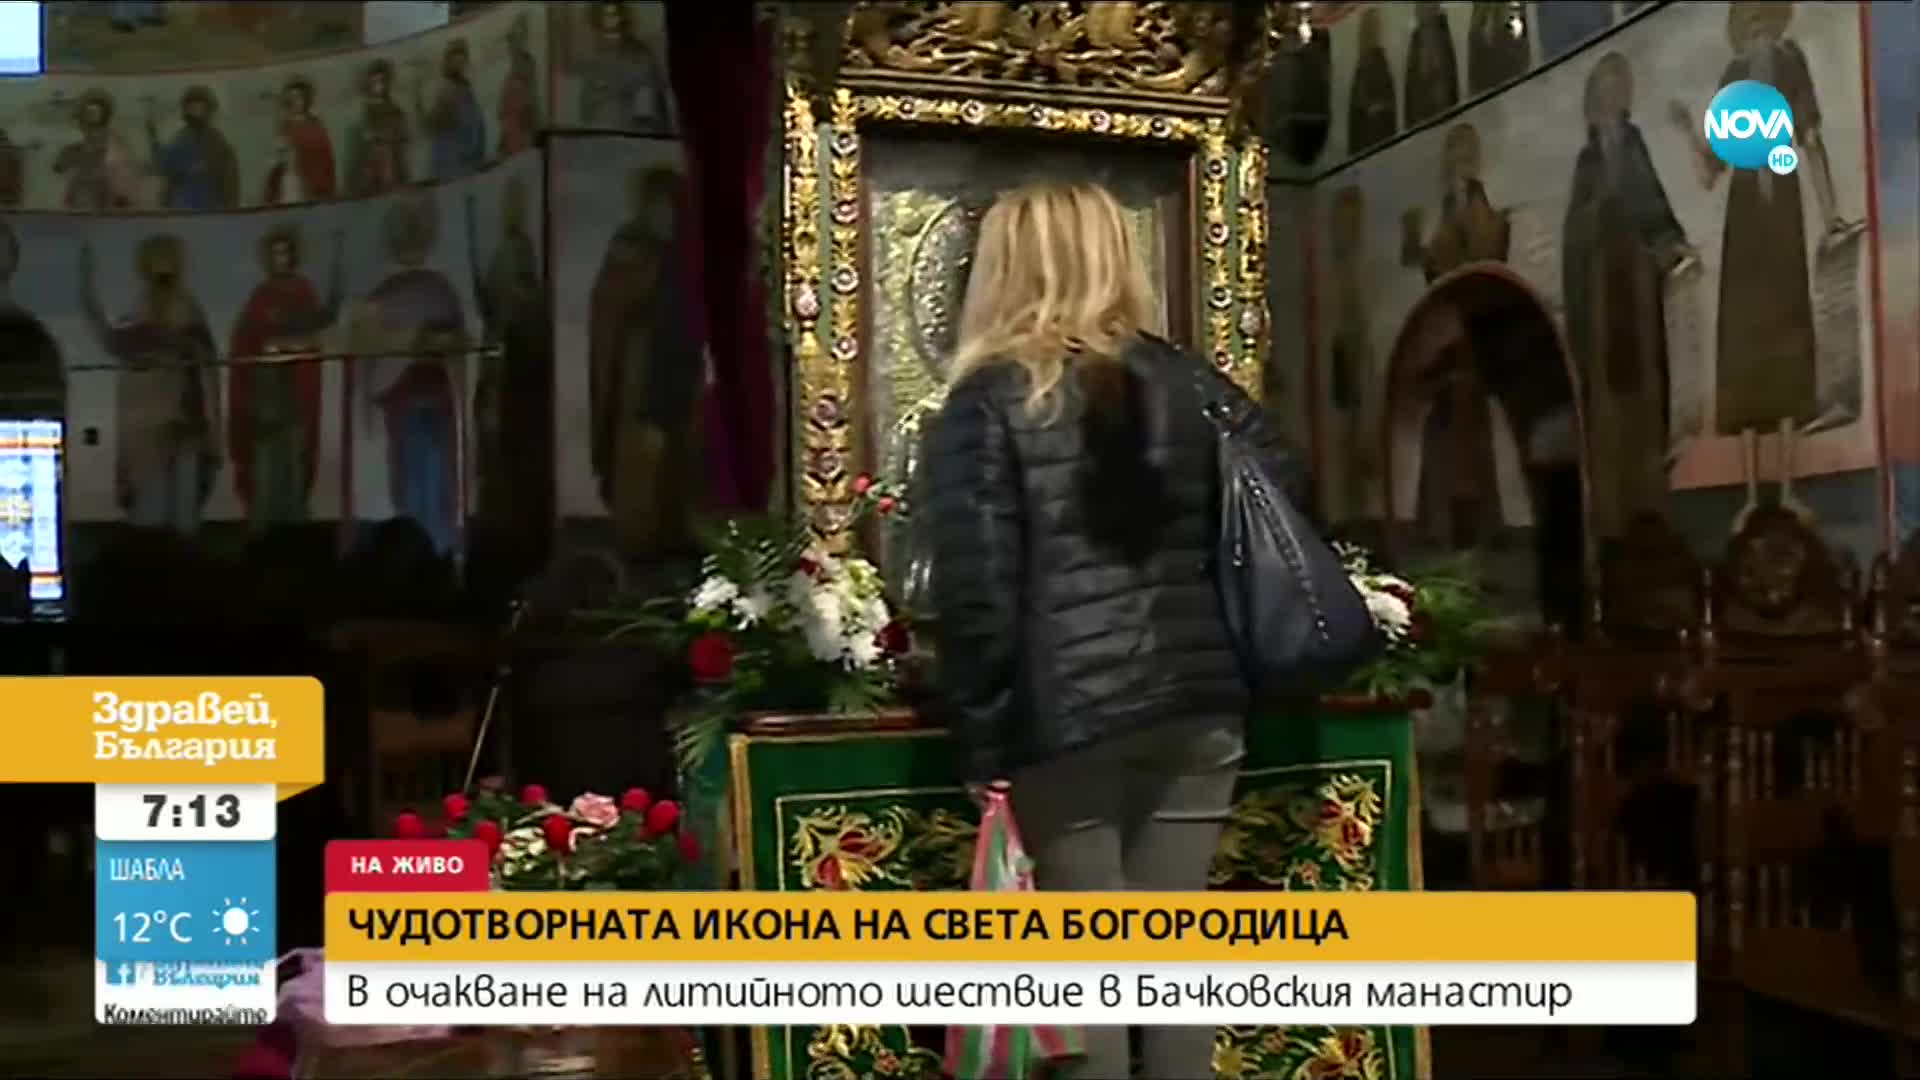 Литийно шествие с чудотворната икона в Бачковския манастир